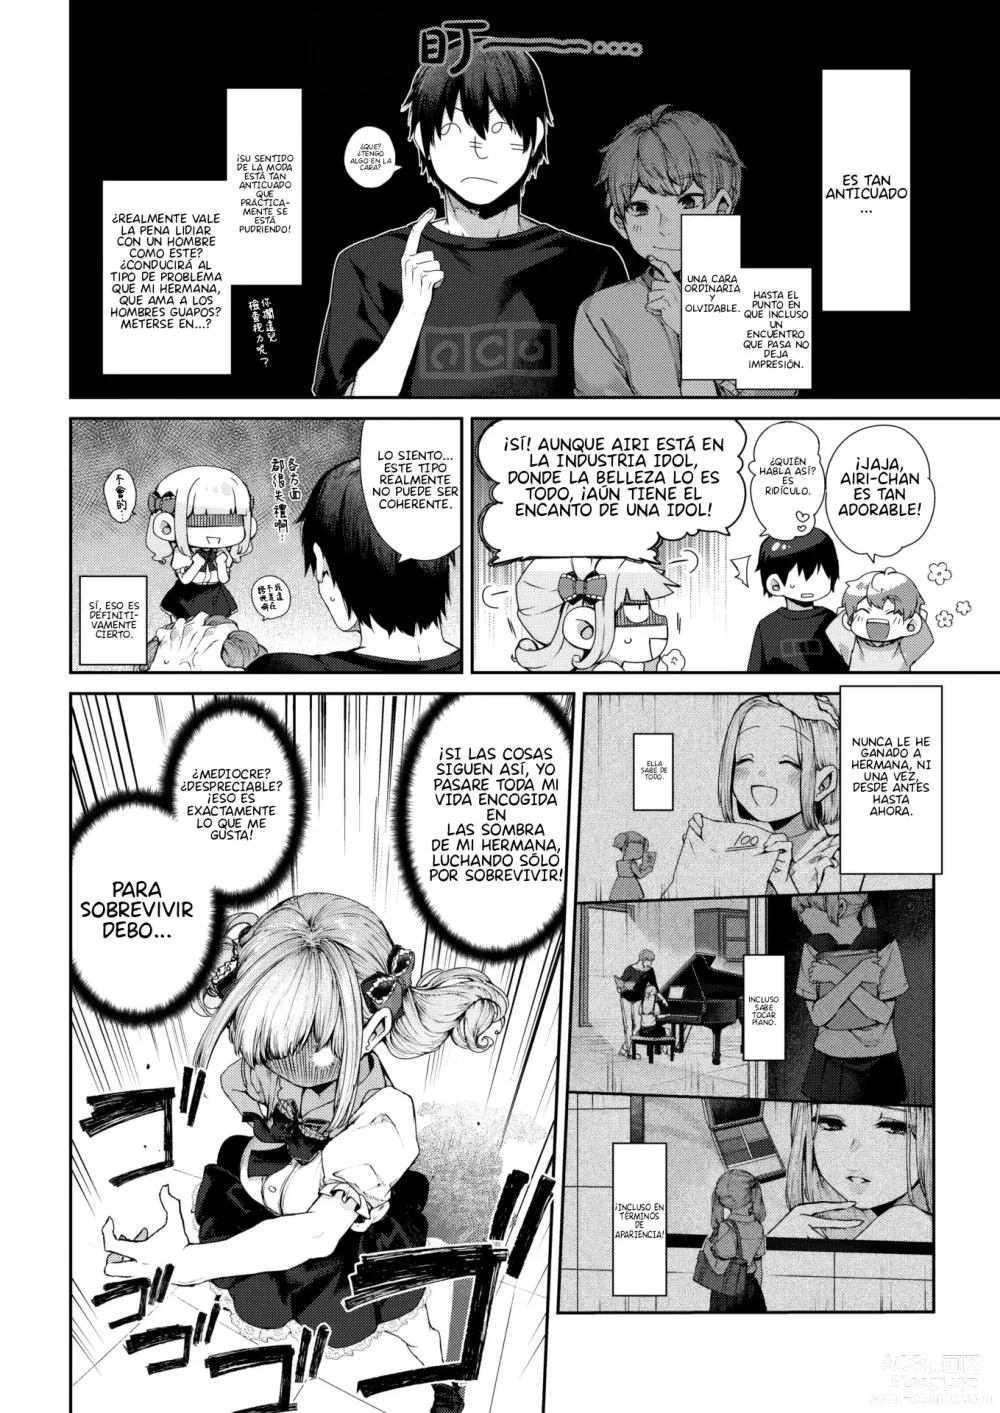 Page 3 of manga Eri-chan wa Netoritai!